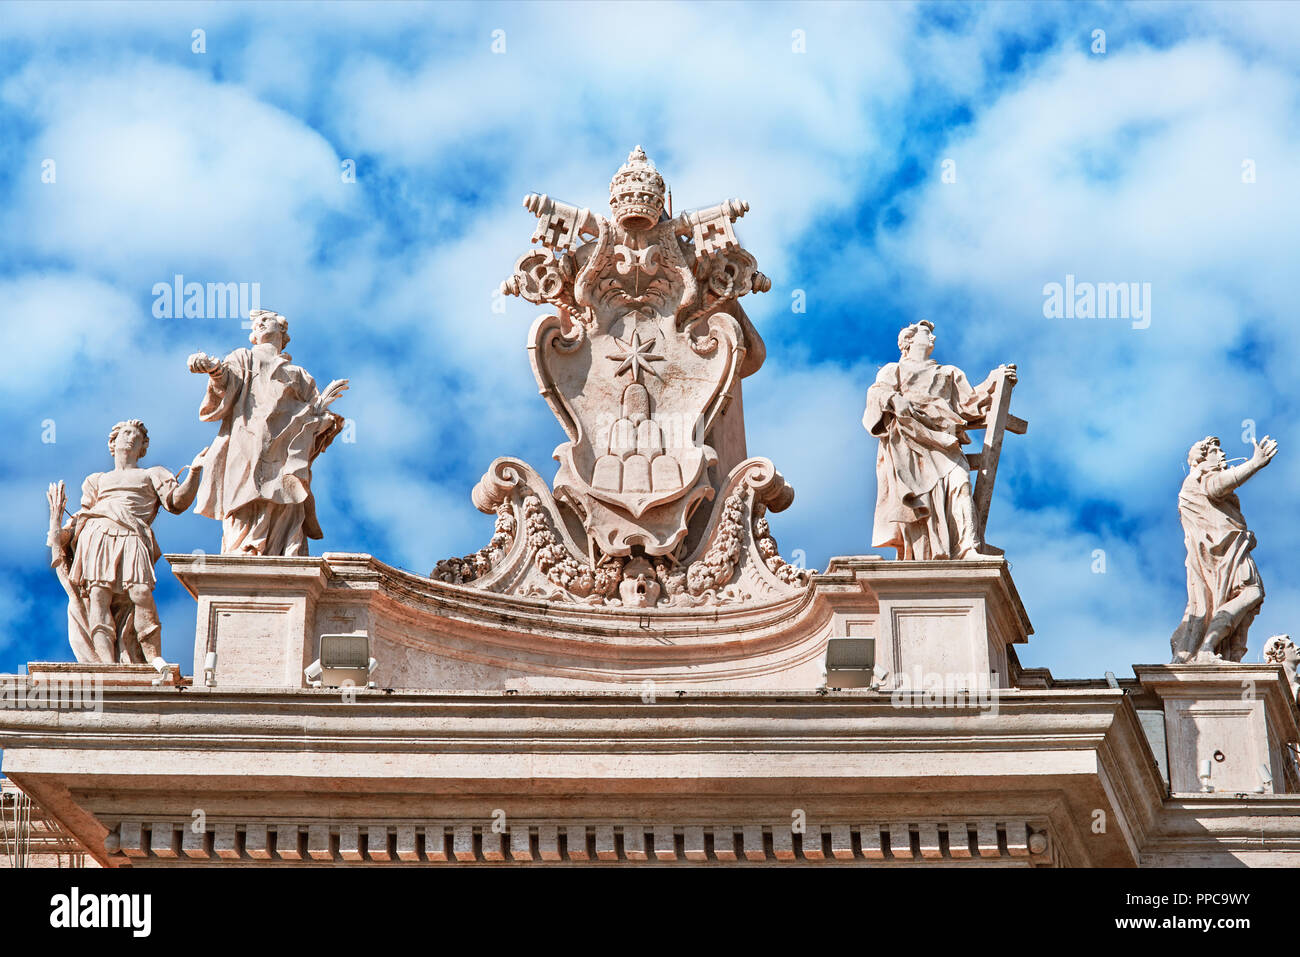 Roma, Basilica di San Pietro in Vaticano, statue dettaglio Foto Stock